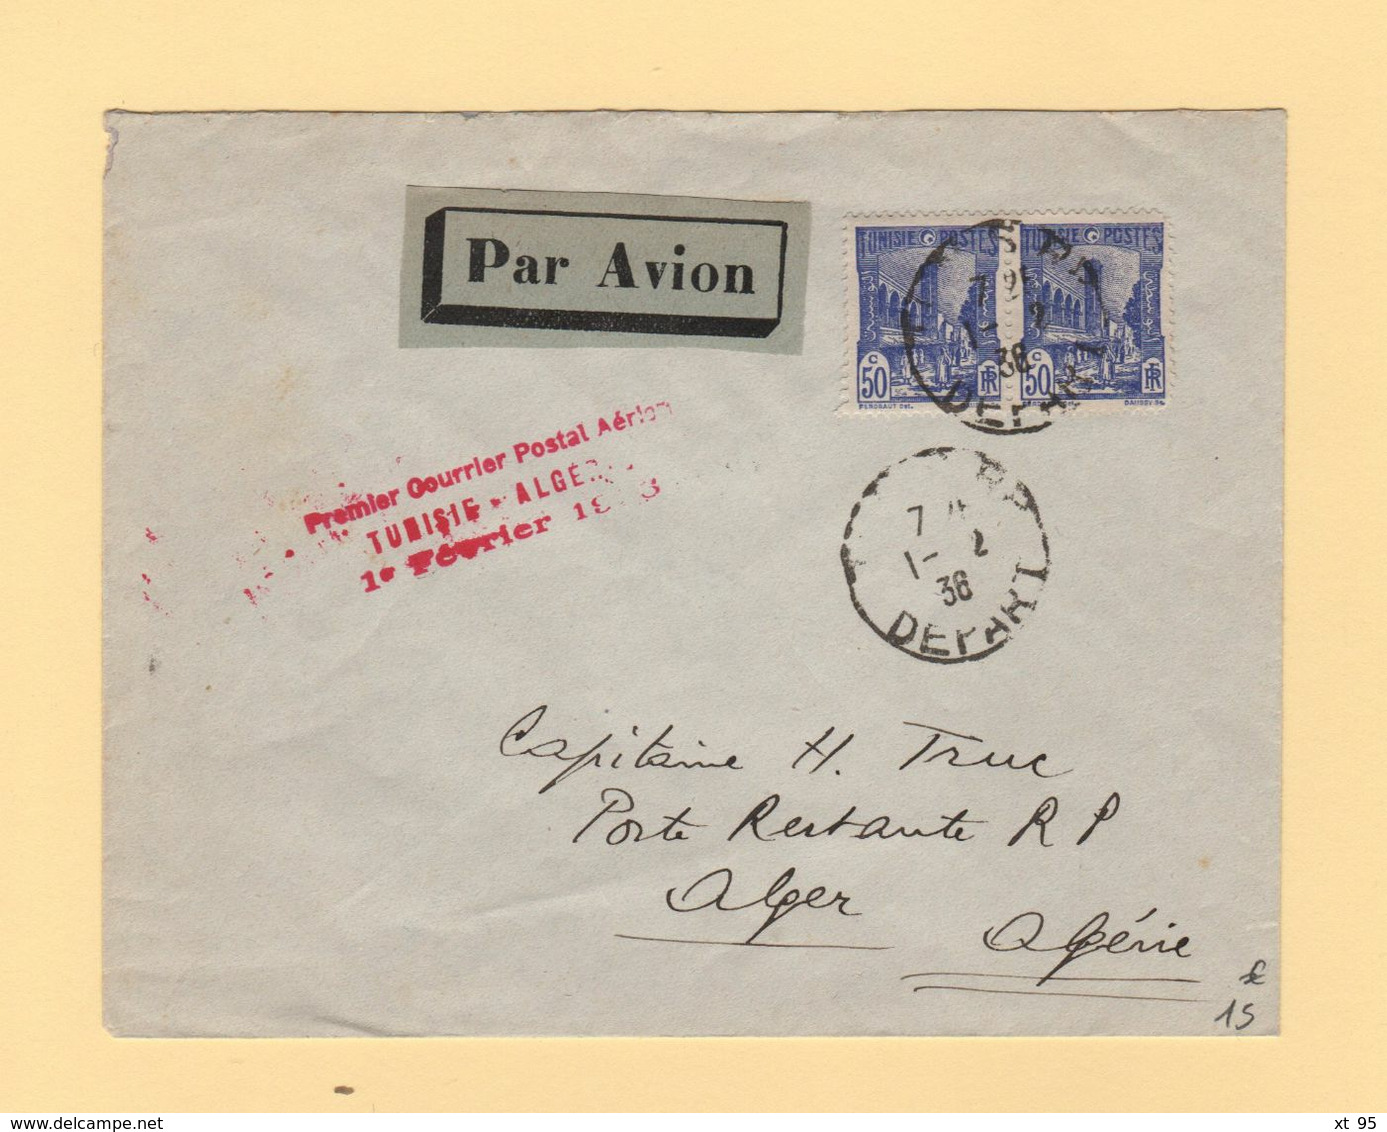 Tunisie - Premier Courrier Postal Aerien Tunisie Algerie - 1er Fevrier 1936 - Posta Aerea